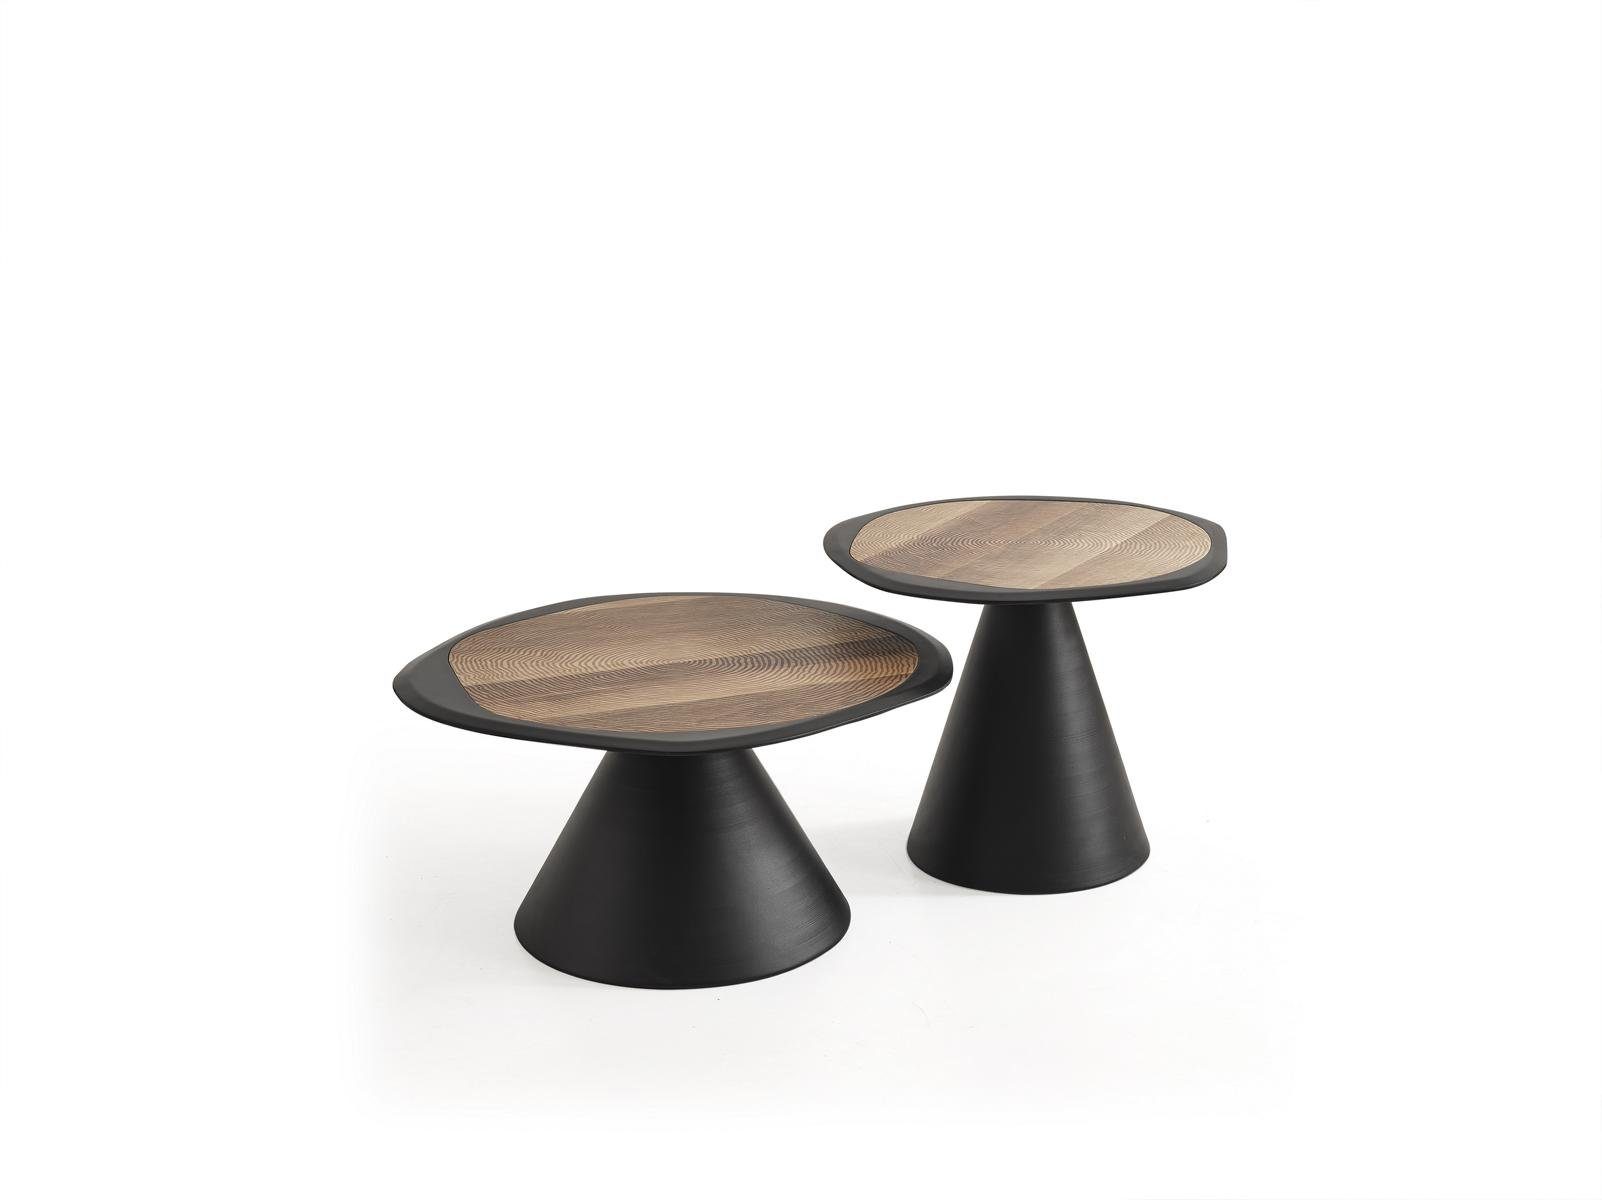 Made in Couchtische (2x Couchtische), Designer Couchtisch Beistelltisch Tische JVmoebel Set Europe